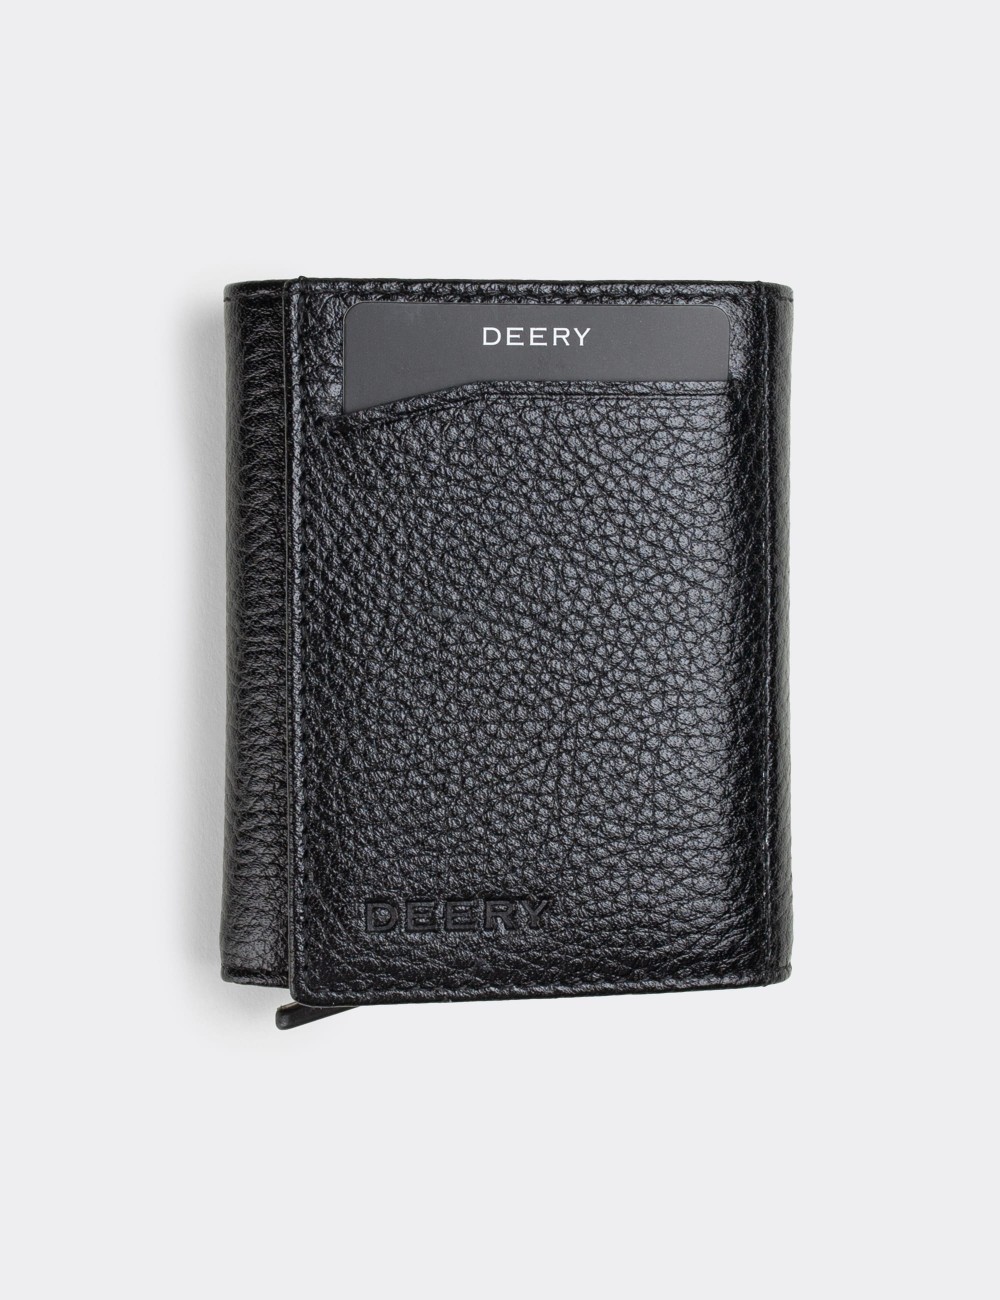  Leather Black Men's Wallet - 00626MSYHZ01